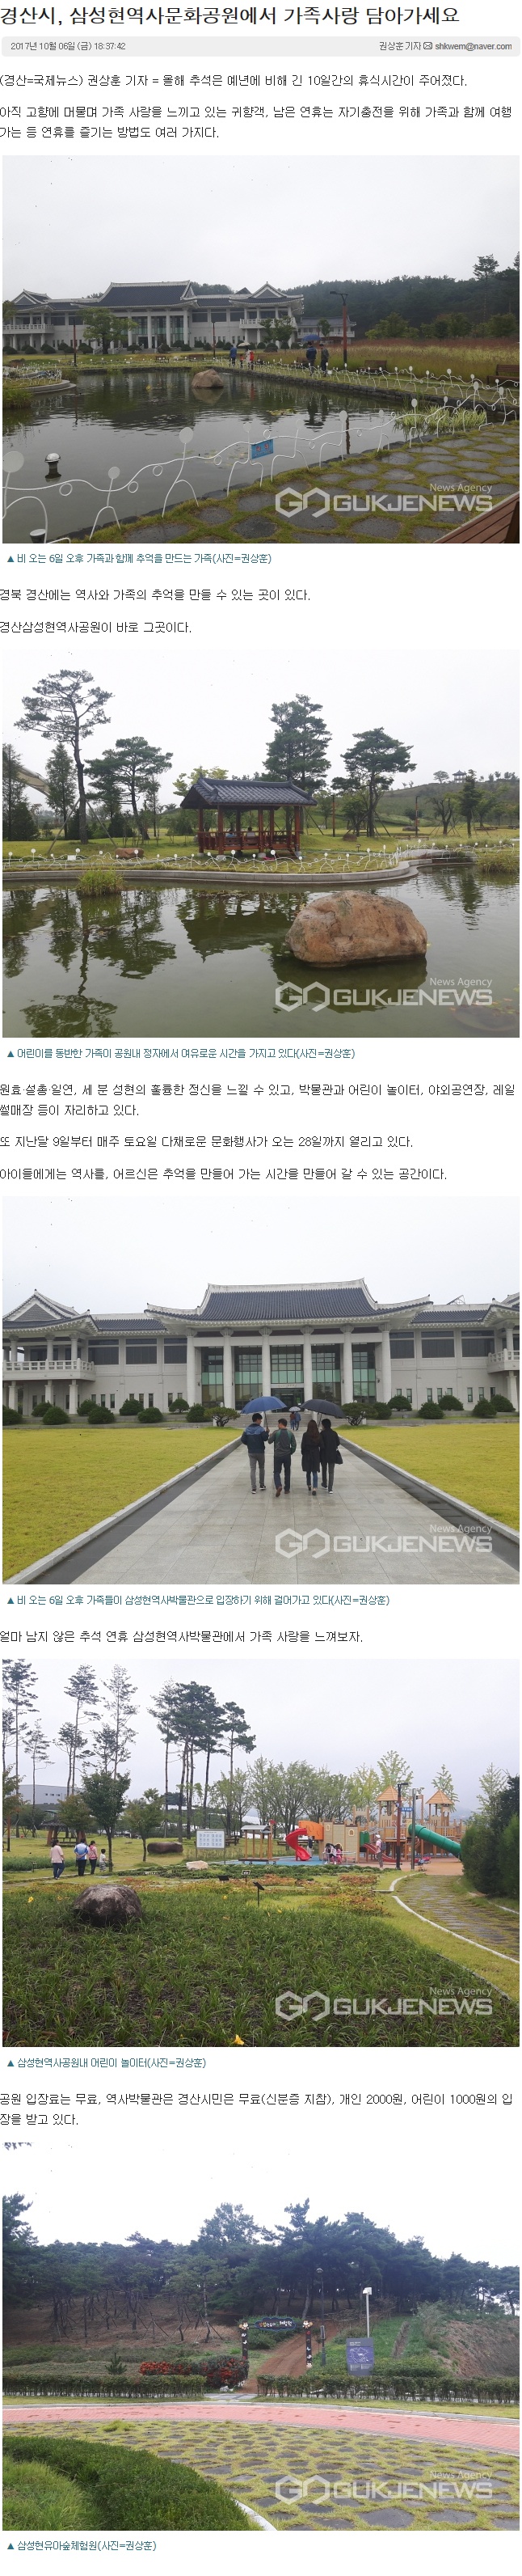 20171006경산시, 삼성현역사문화공원에서 가족사랑 담아가세요.jpg